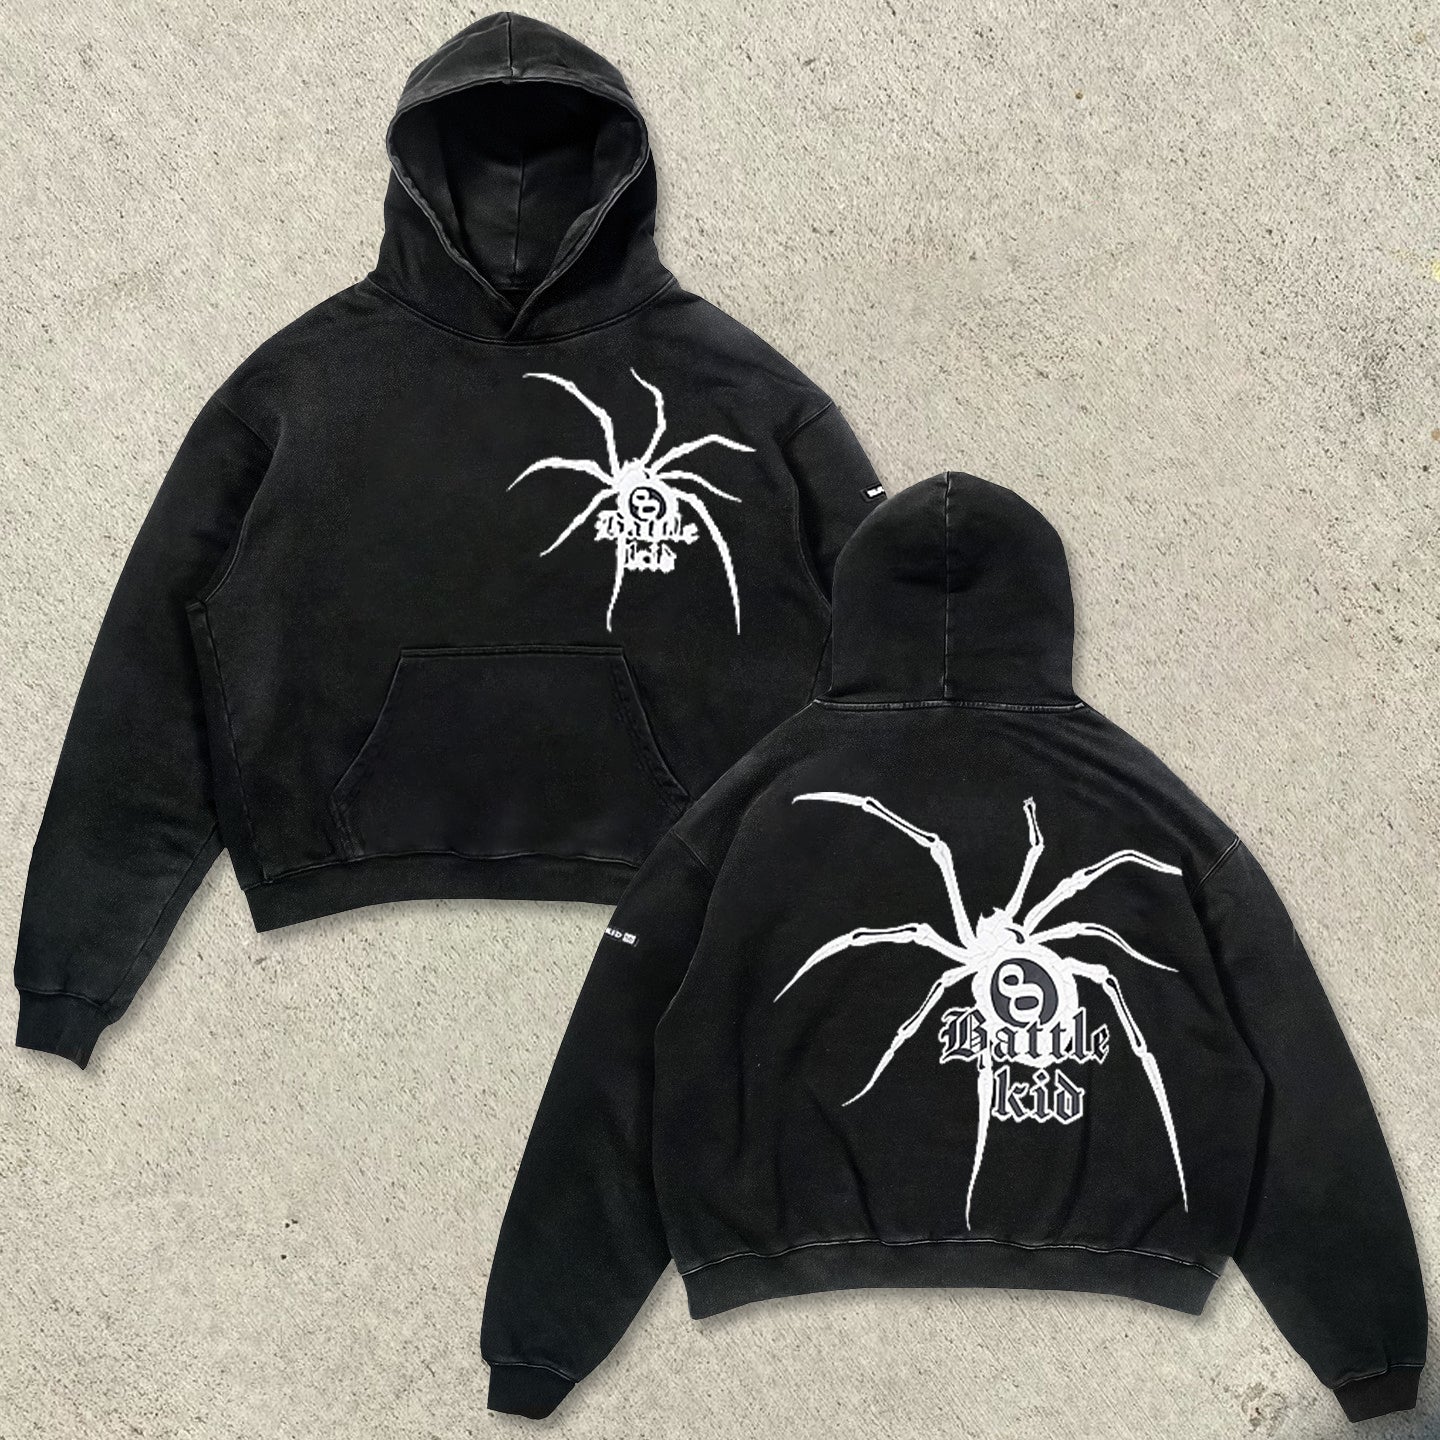 Designed spider print trendy brand loose hoodie